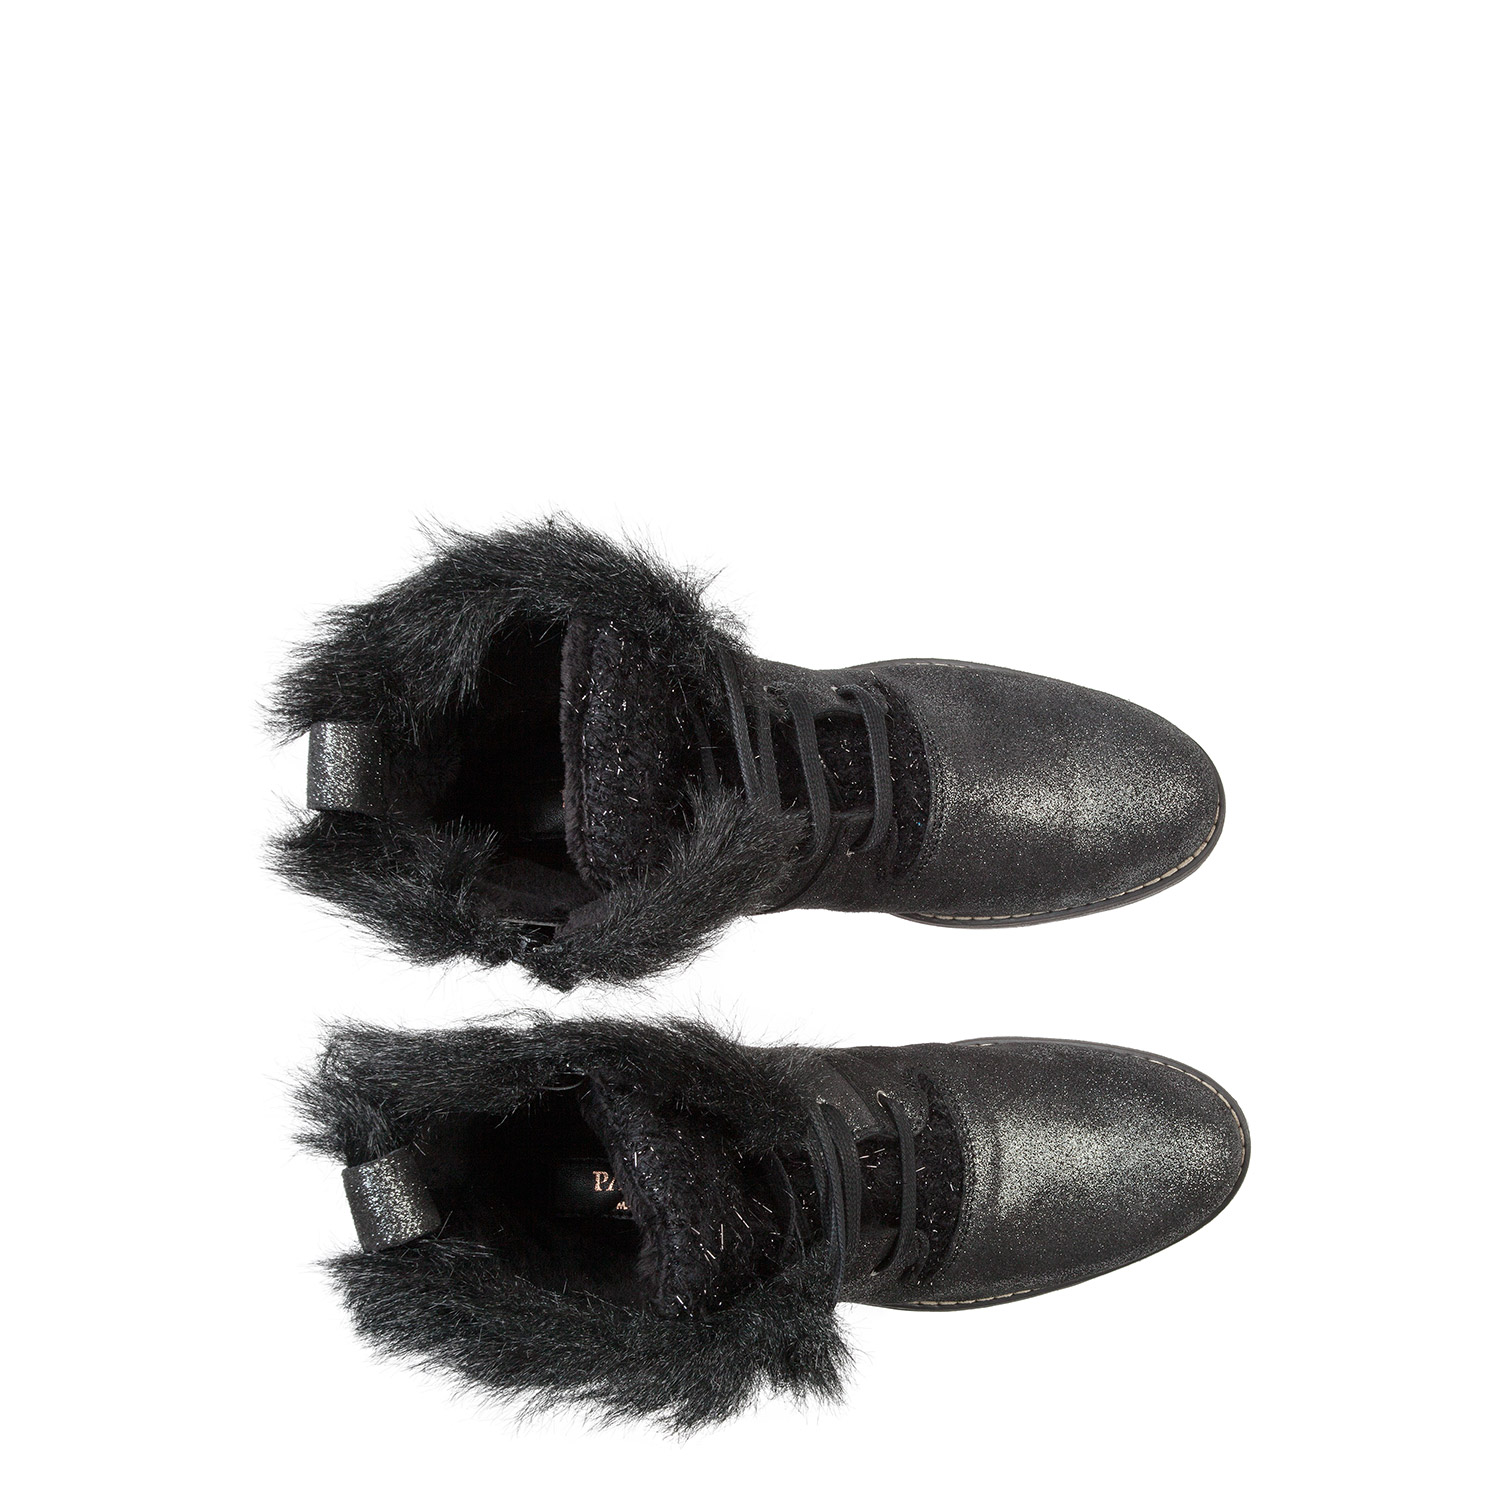 Зимние ботинки из замши и текстиля PAZOLINI SW-SNW7-8